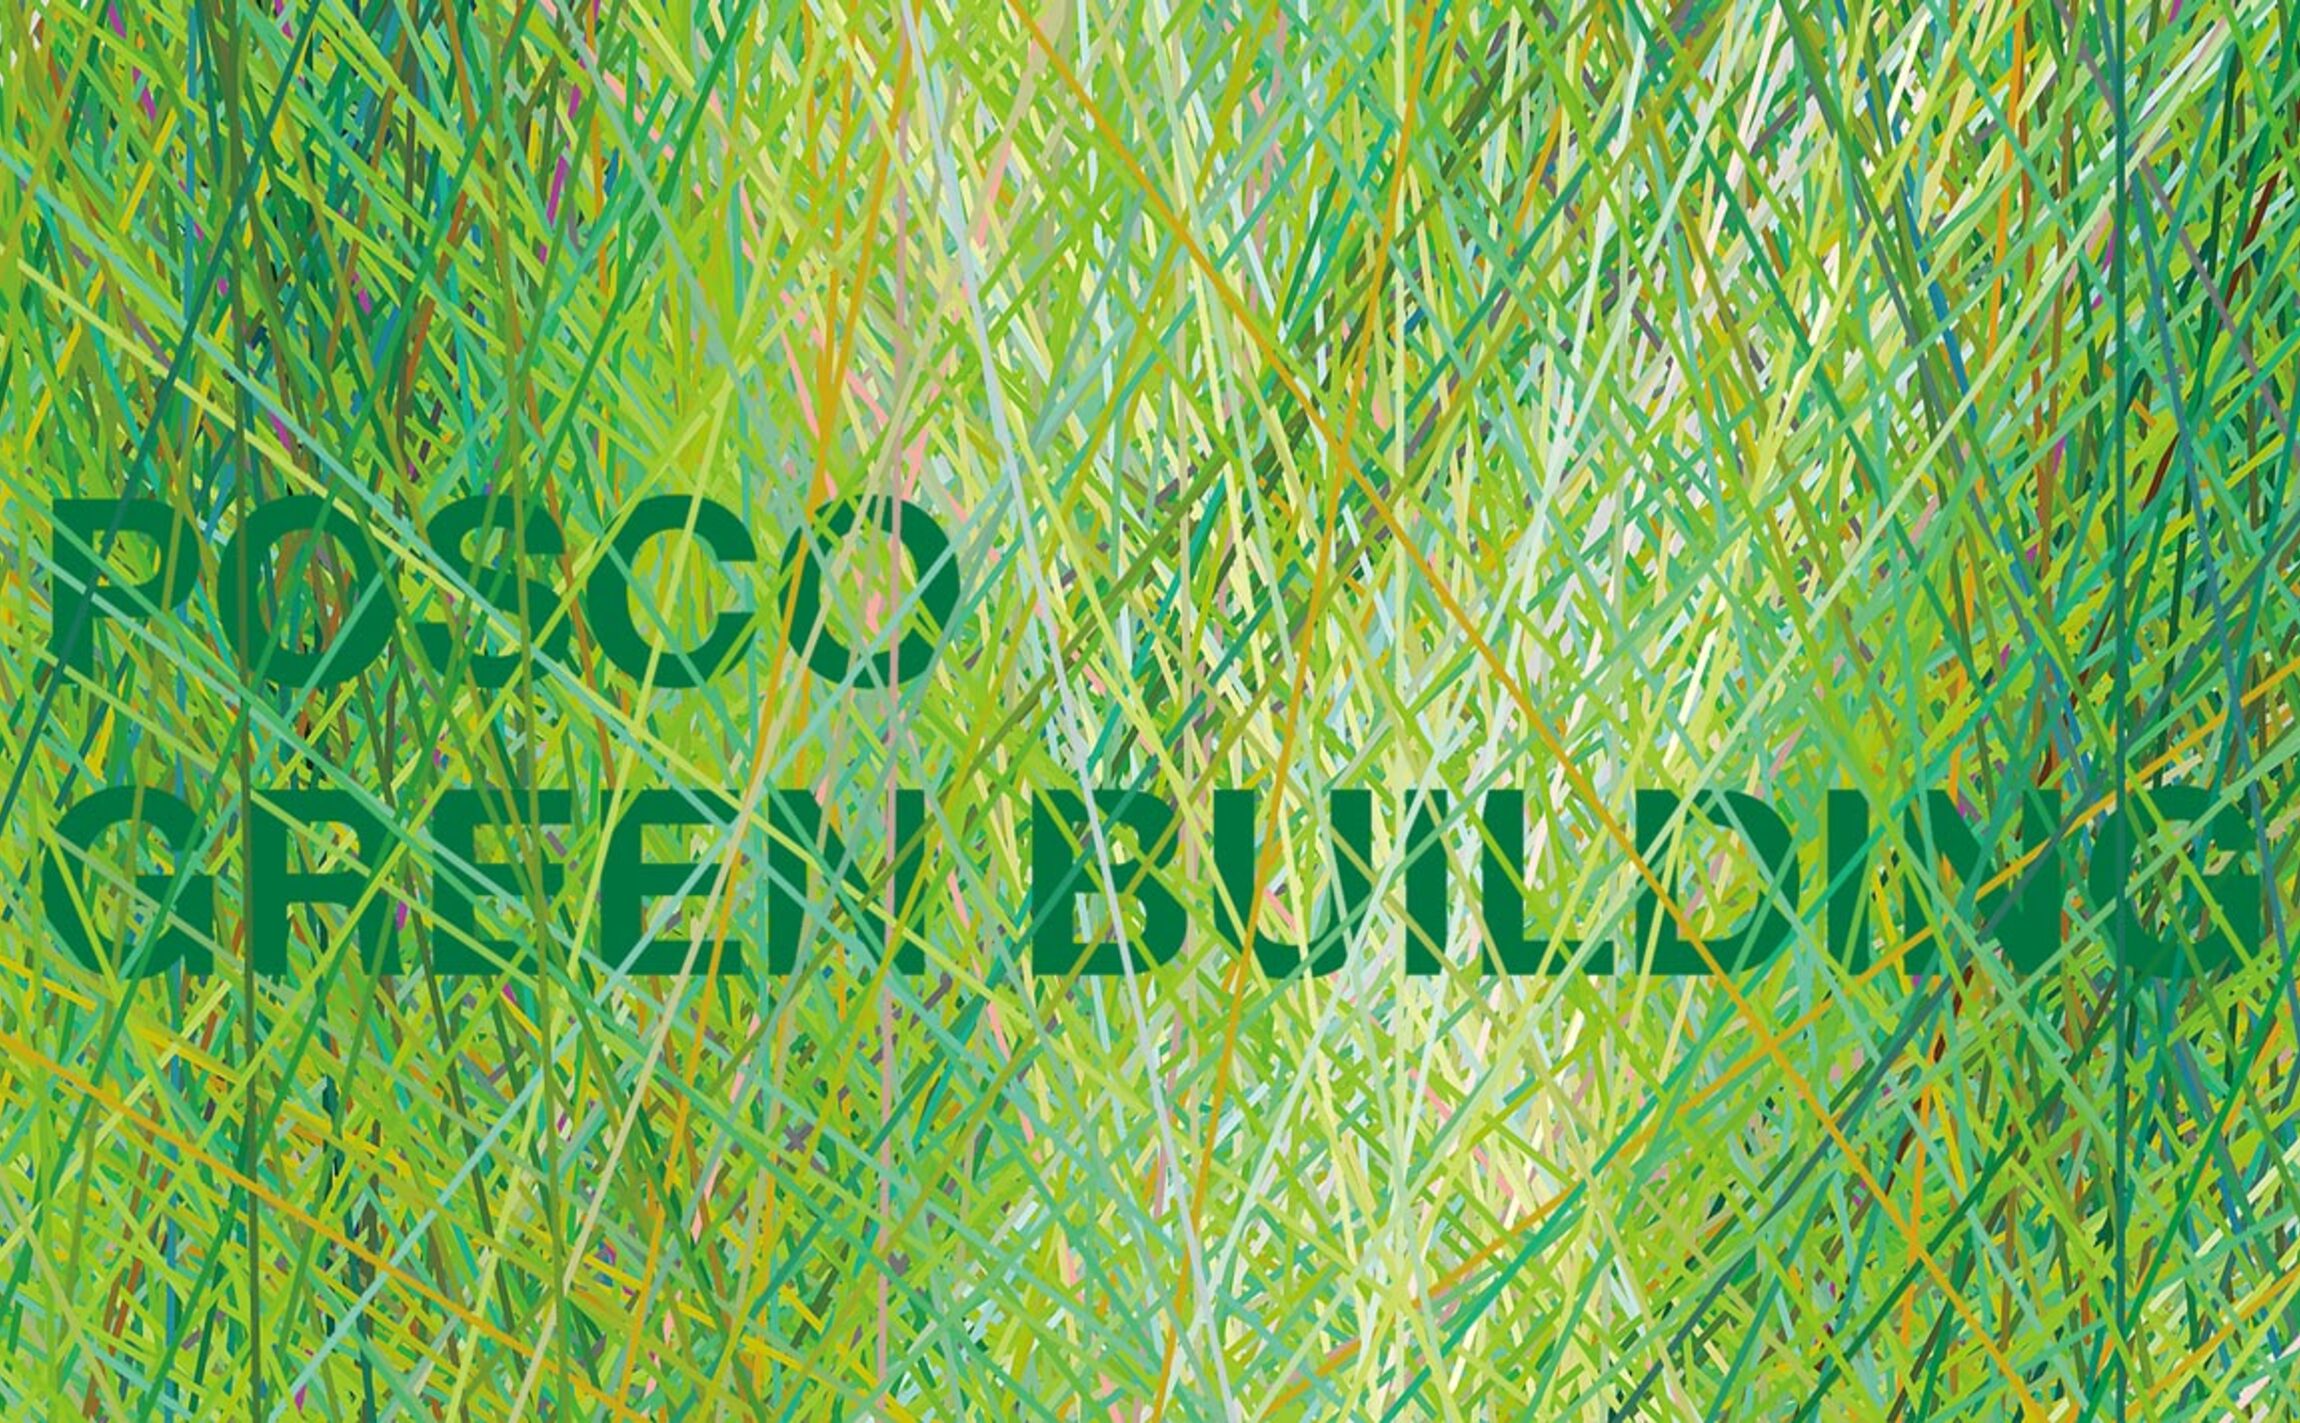 POSCO Green Building POSCO Exibition & Environmental